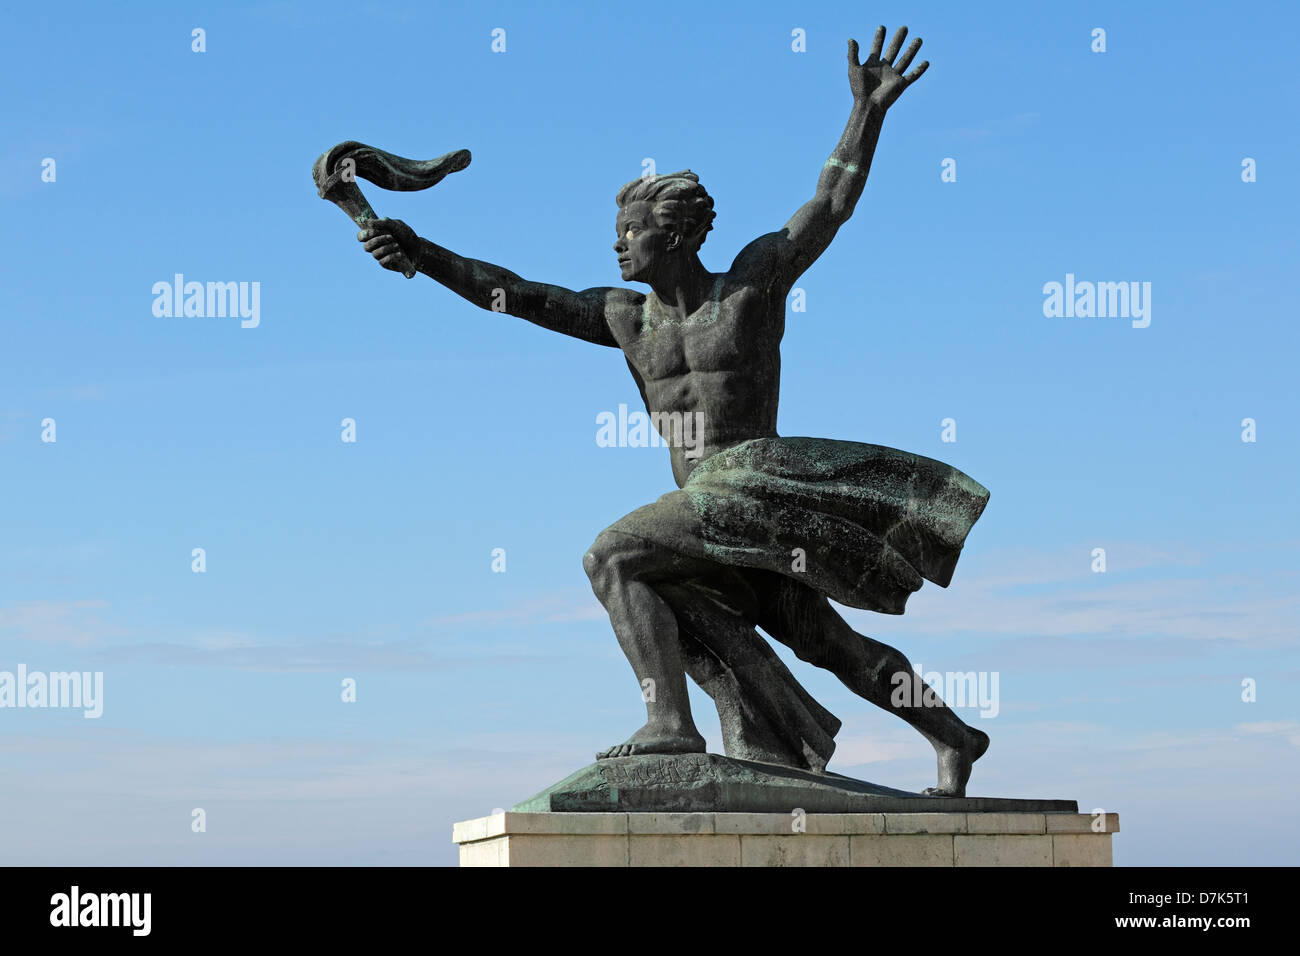 Dettaglio del Monumento della Liberazione sul Colle Gellert Budapest, Ungheria Foto Stock